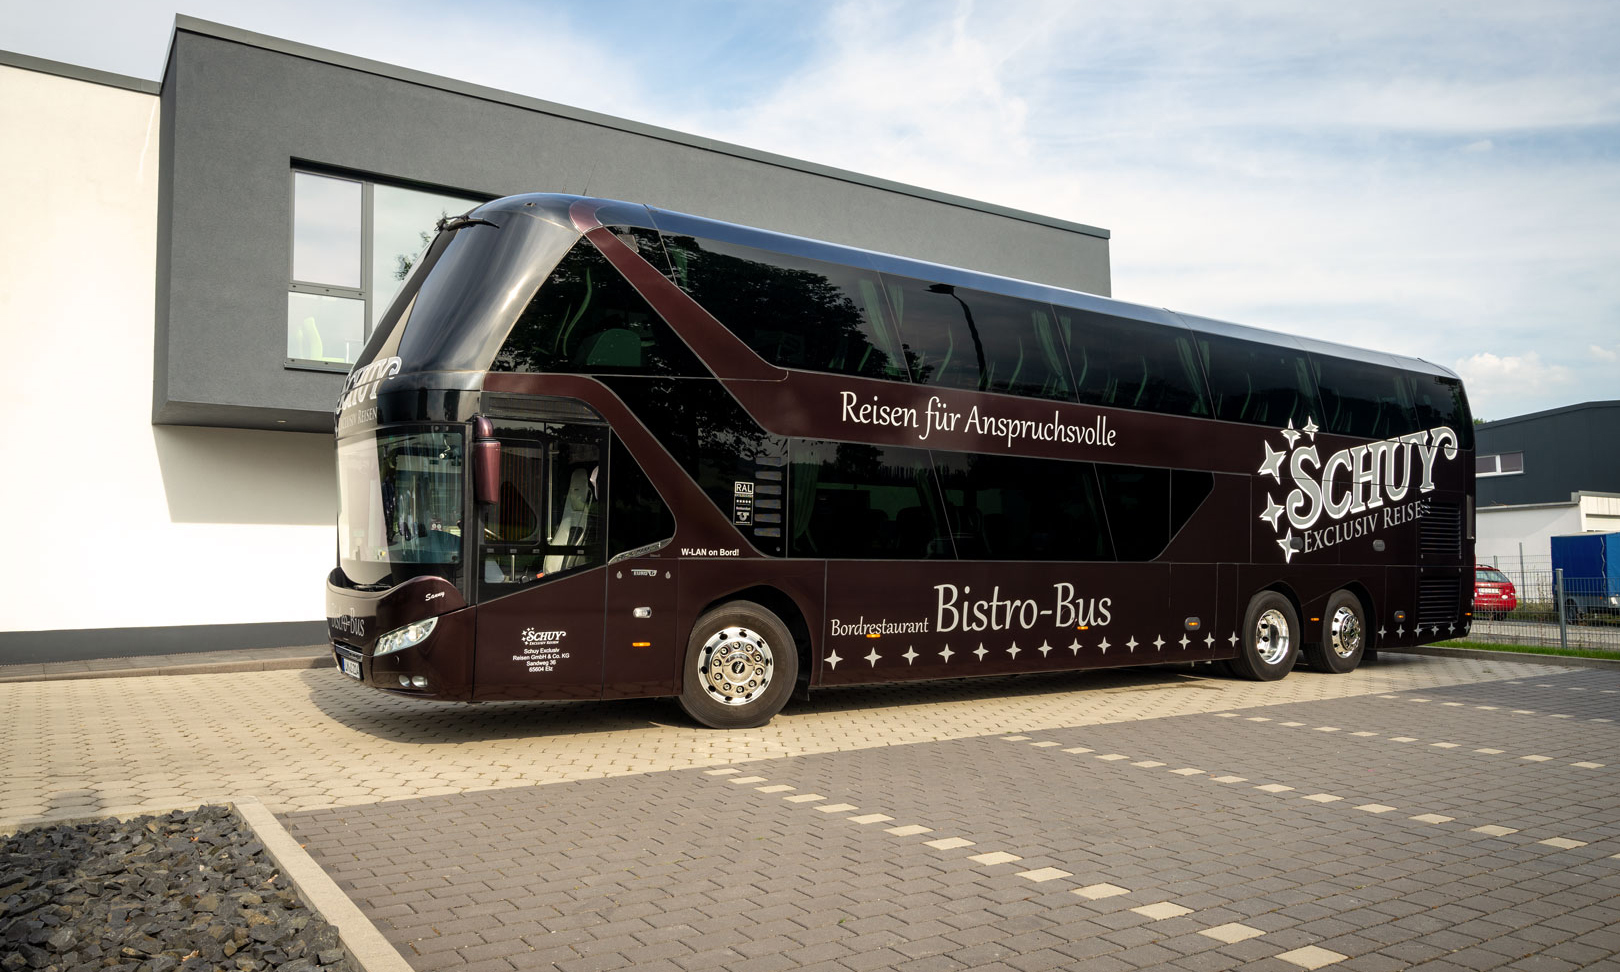 Schuy Exclusiv Reisen_Bistro-Bus_Skyliner 5 Bistro Bus